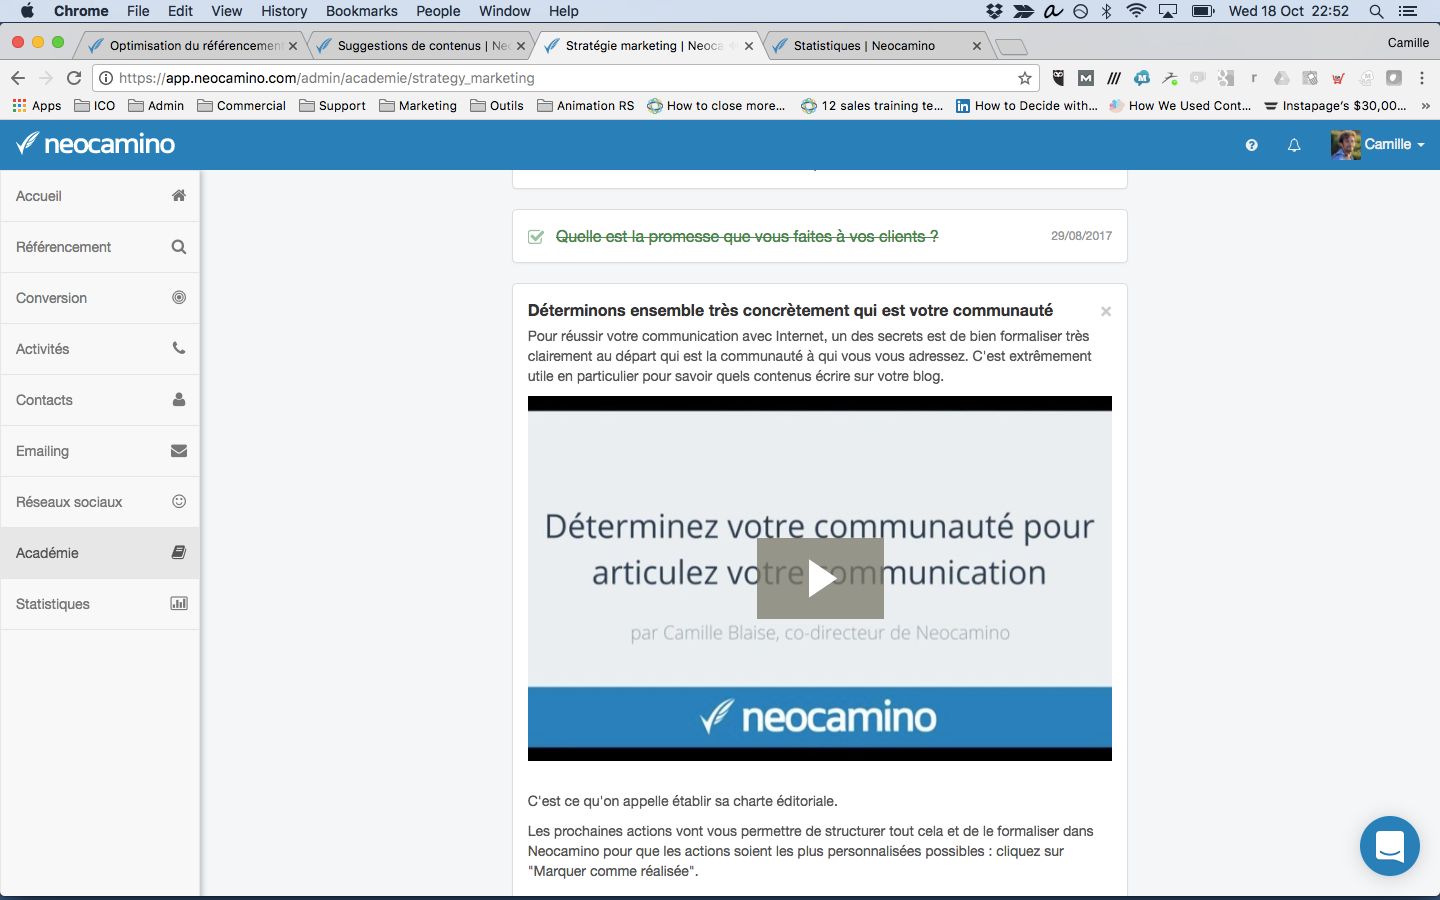 neocamino - Neocamino Academy lernen alle notwendigen Marketing-Tools zu verwenden,